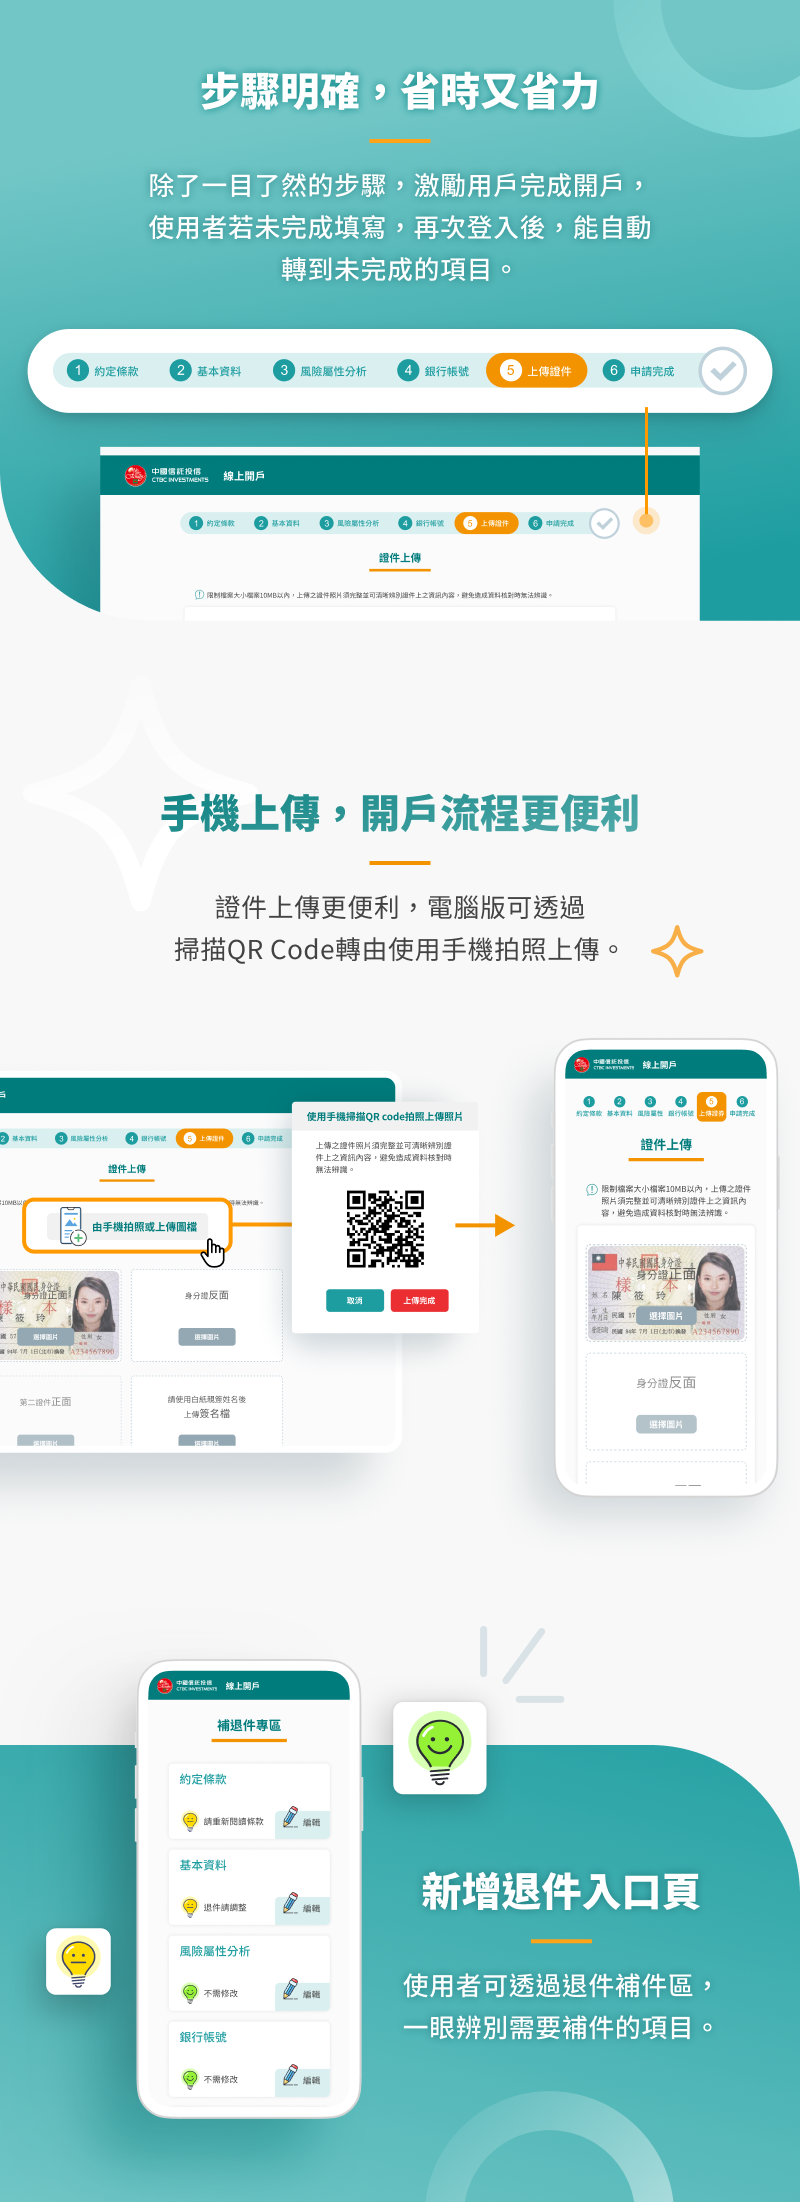 中國信託投信 線上開戶 網站建置 網頁設計